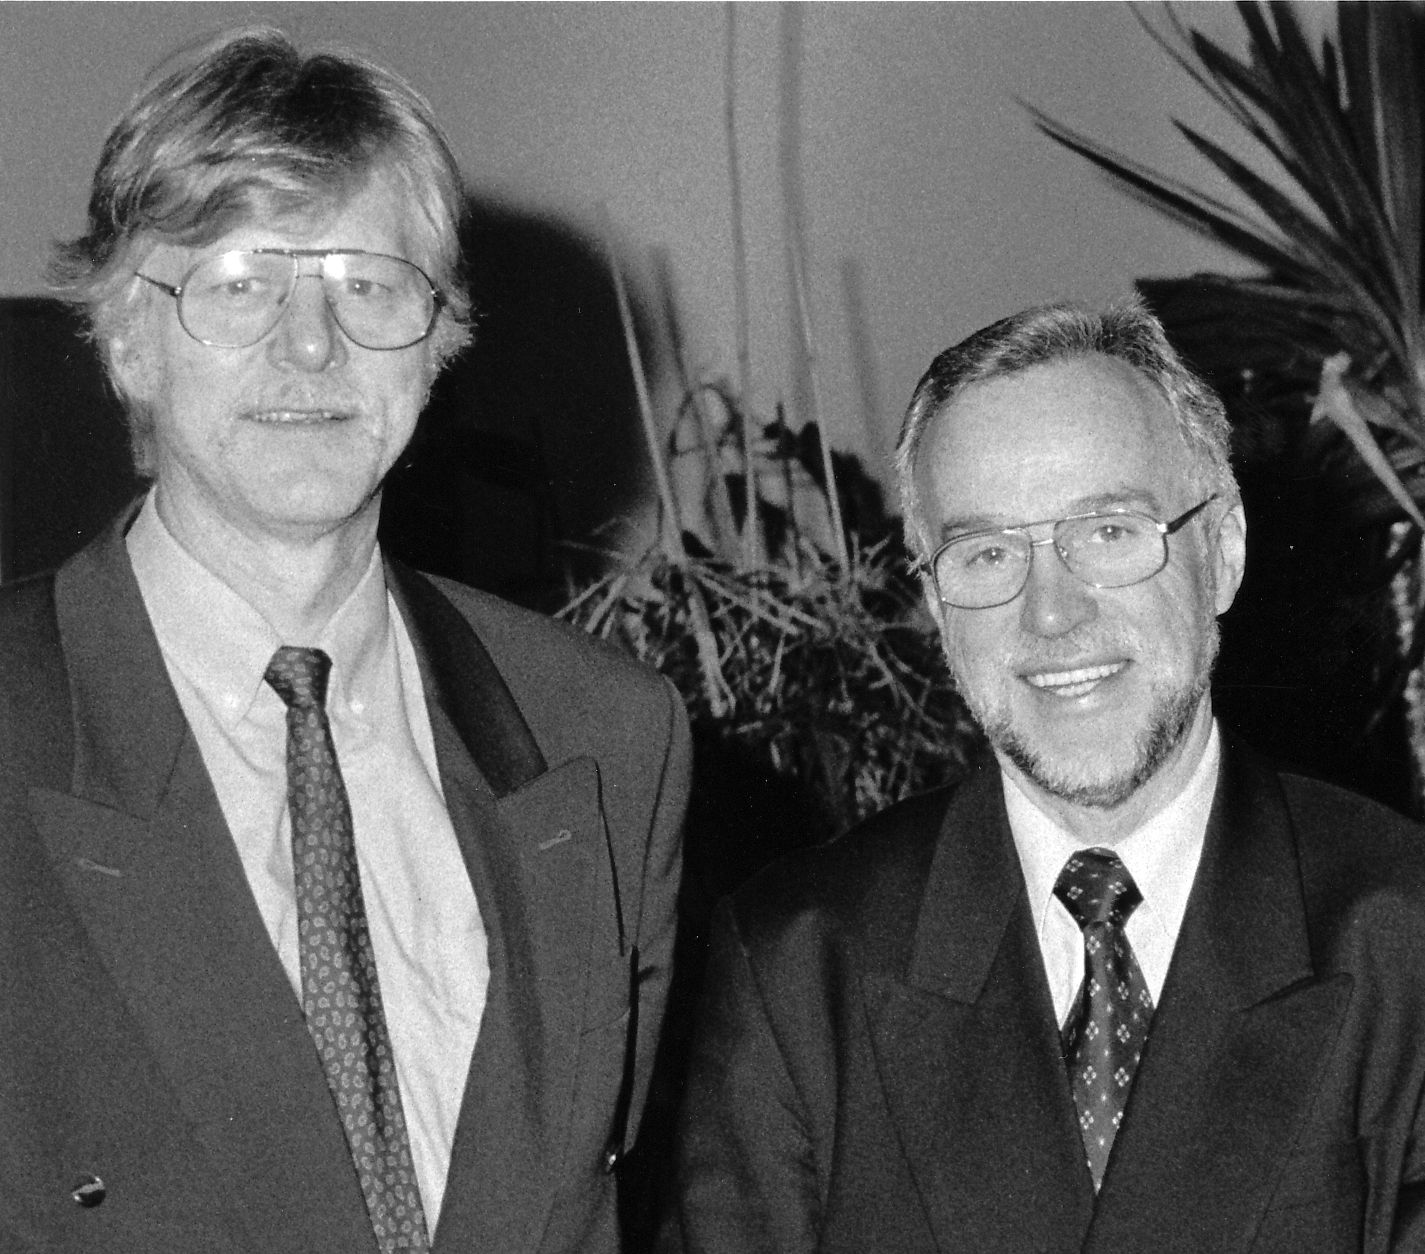 Horst Diehl neben Wilfried Müller. Dehl trägt einen dunklen Anzug und lächelt in die Kamera.